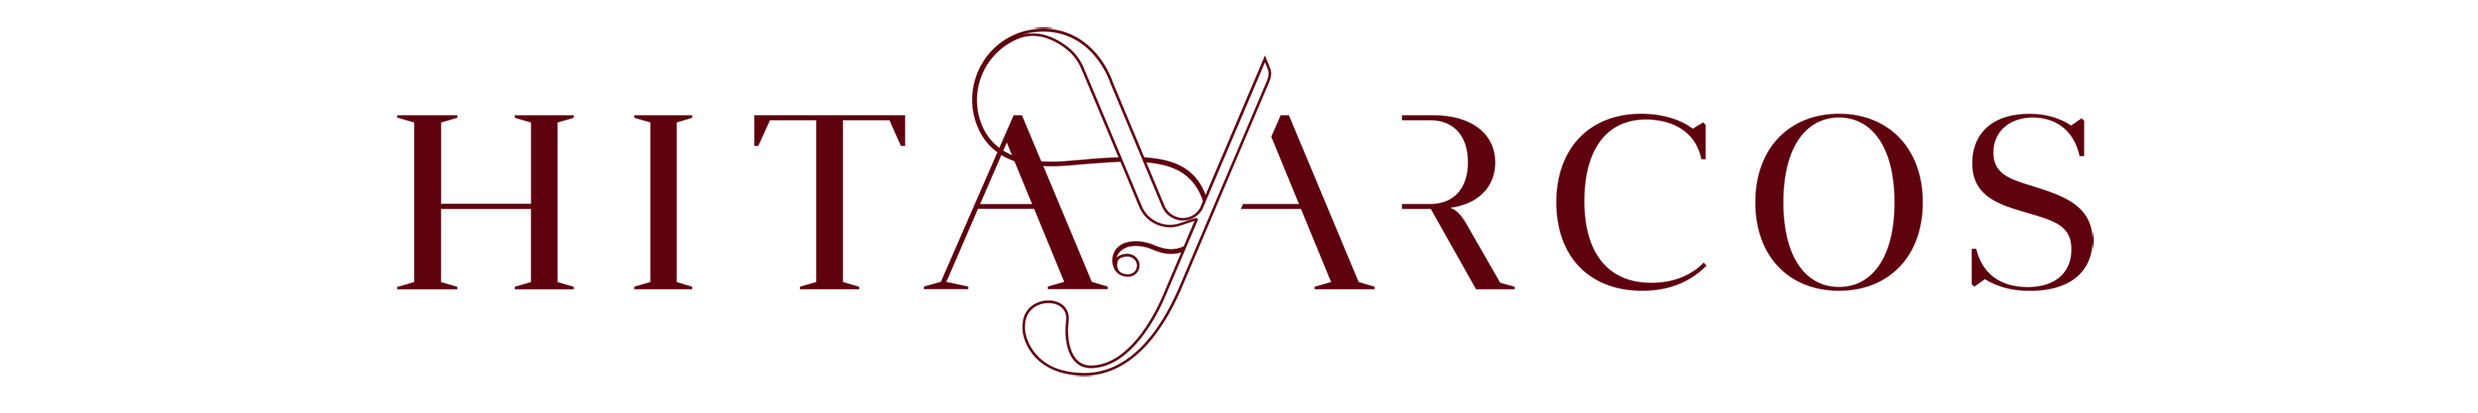 Logo Hita y Arcos